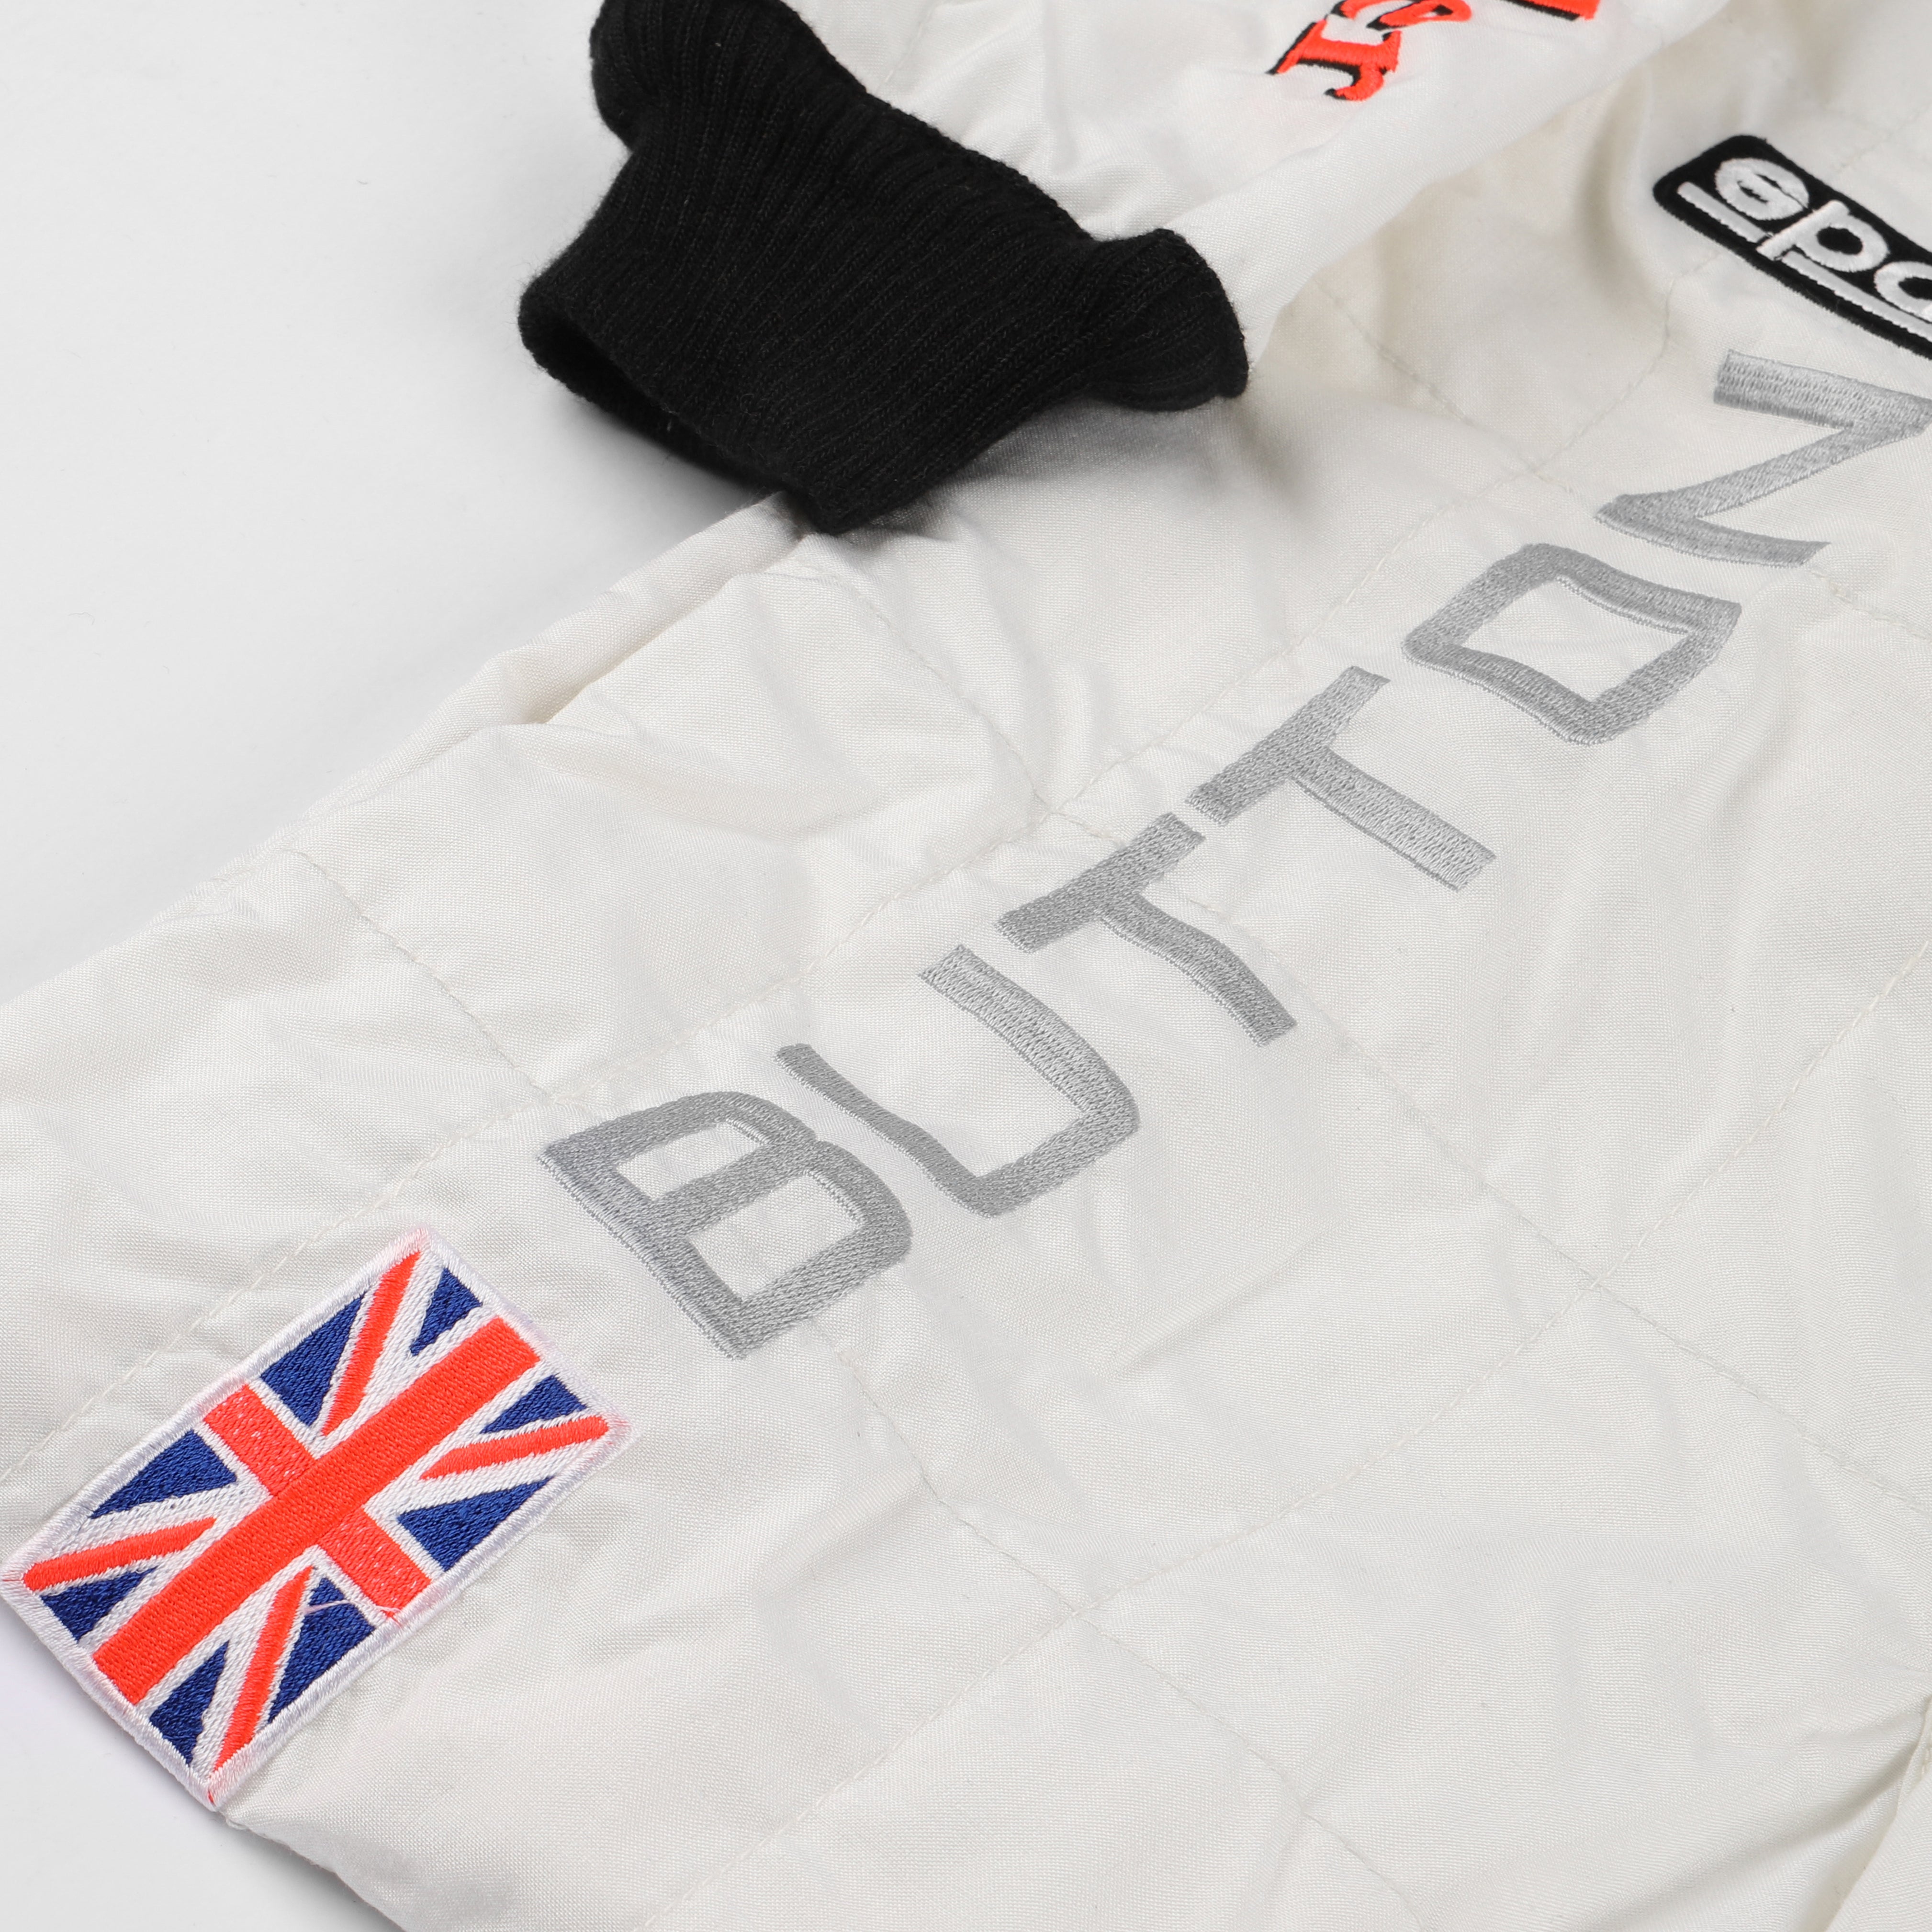 Jenson Button 2014 Replica McLaren F1 Team Race Suit